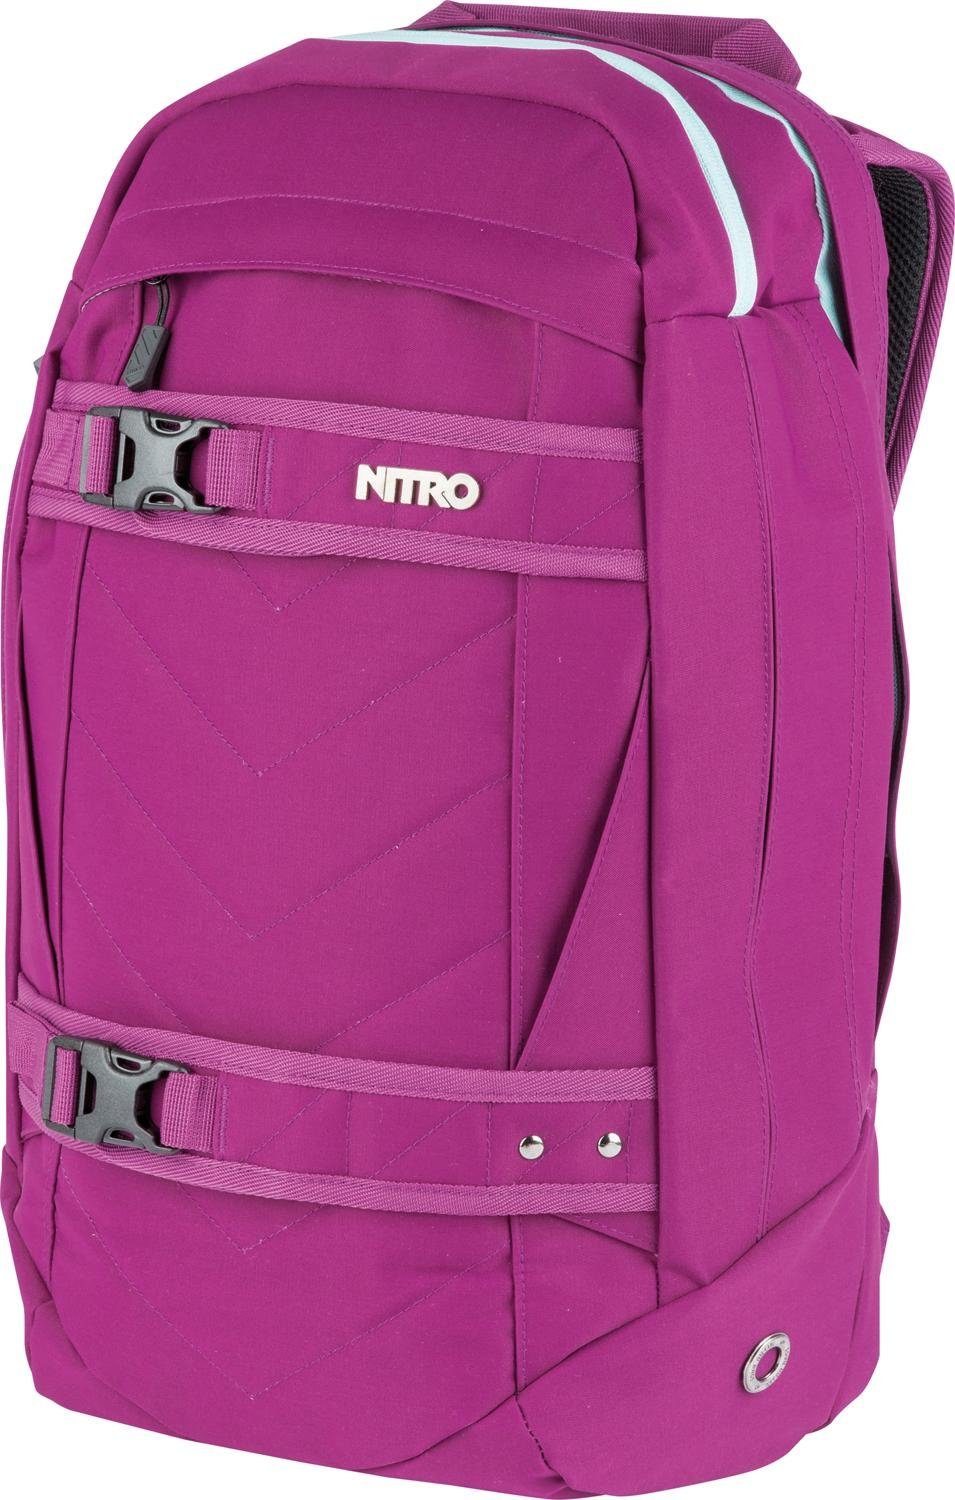 NITRO Laptoprucksack Aerial, Multifunktionsrucksack, Schulrucksack, Daypack, Schoolbag grateful pink